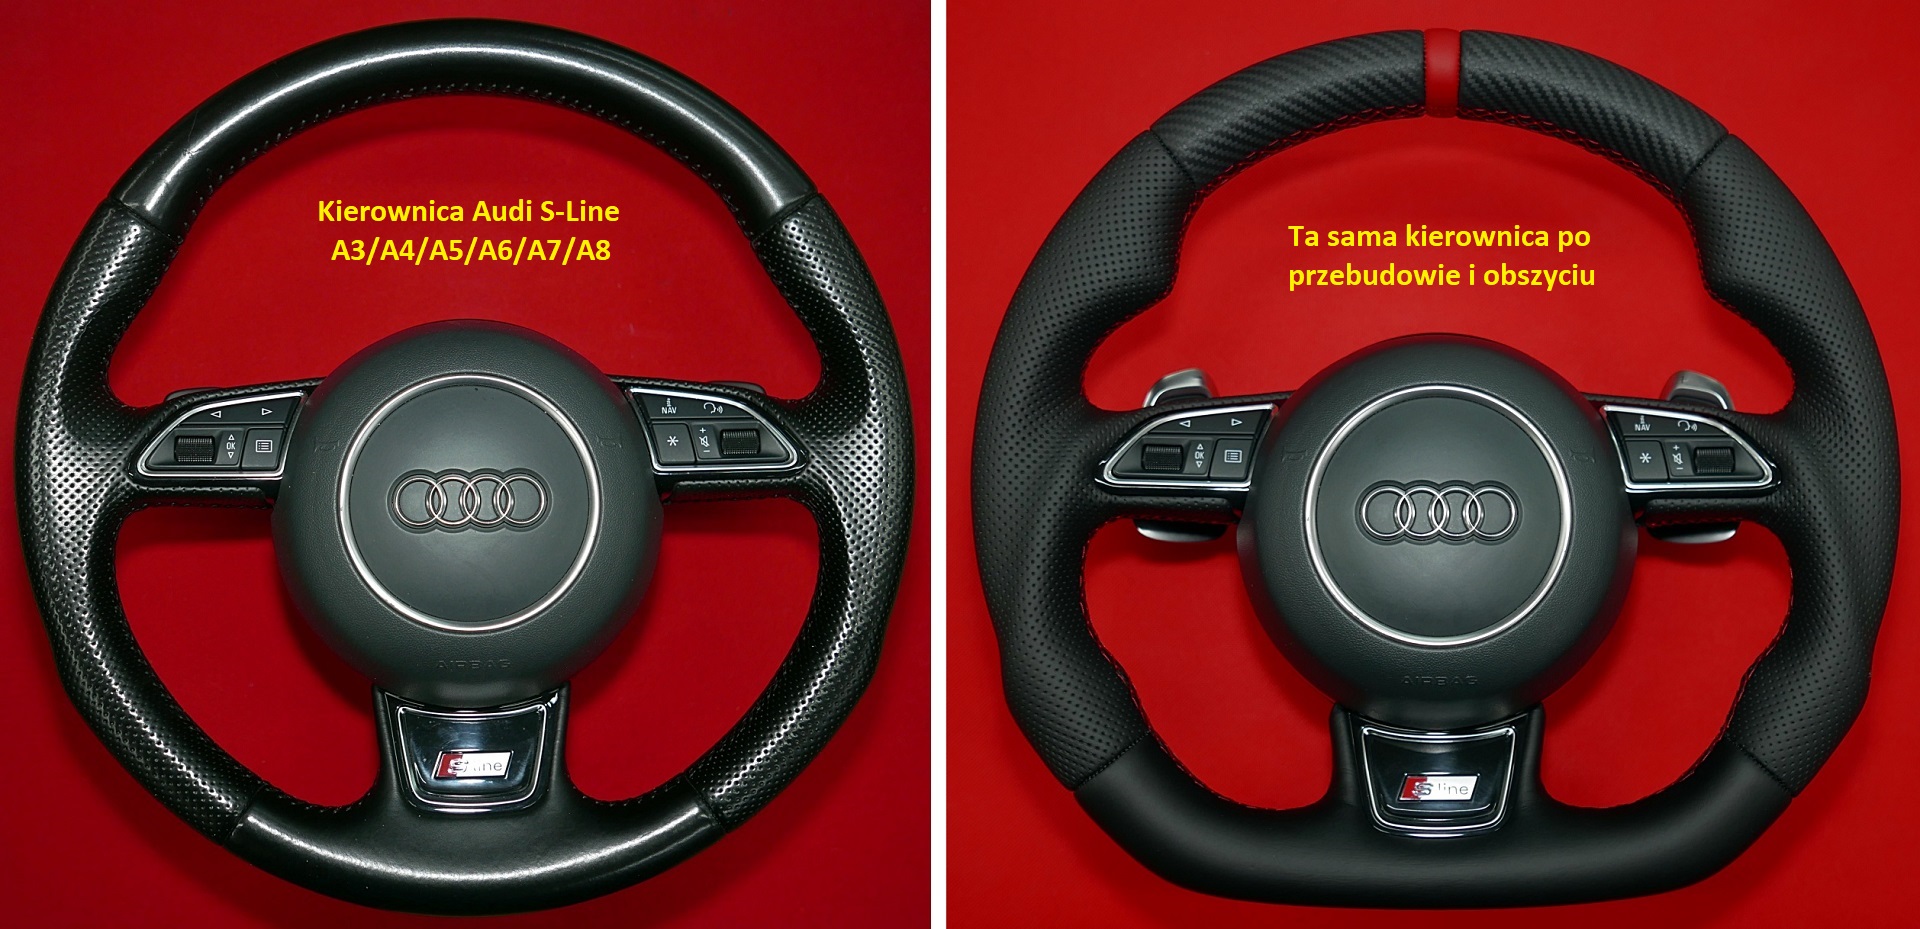 Zmiana kształtu spłaszczenie kierownica Audi A4 A6 S-Line carbon włókno węglowe